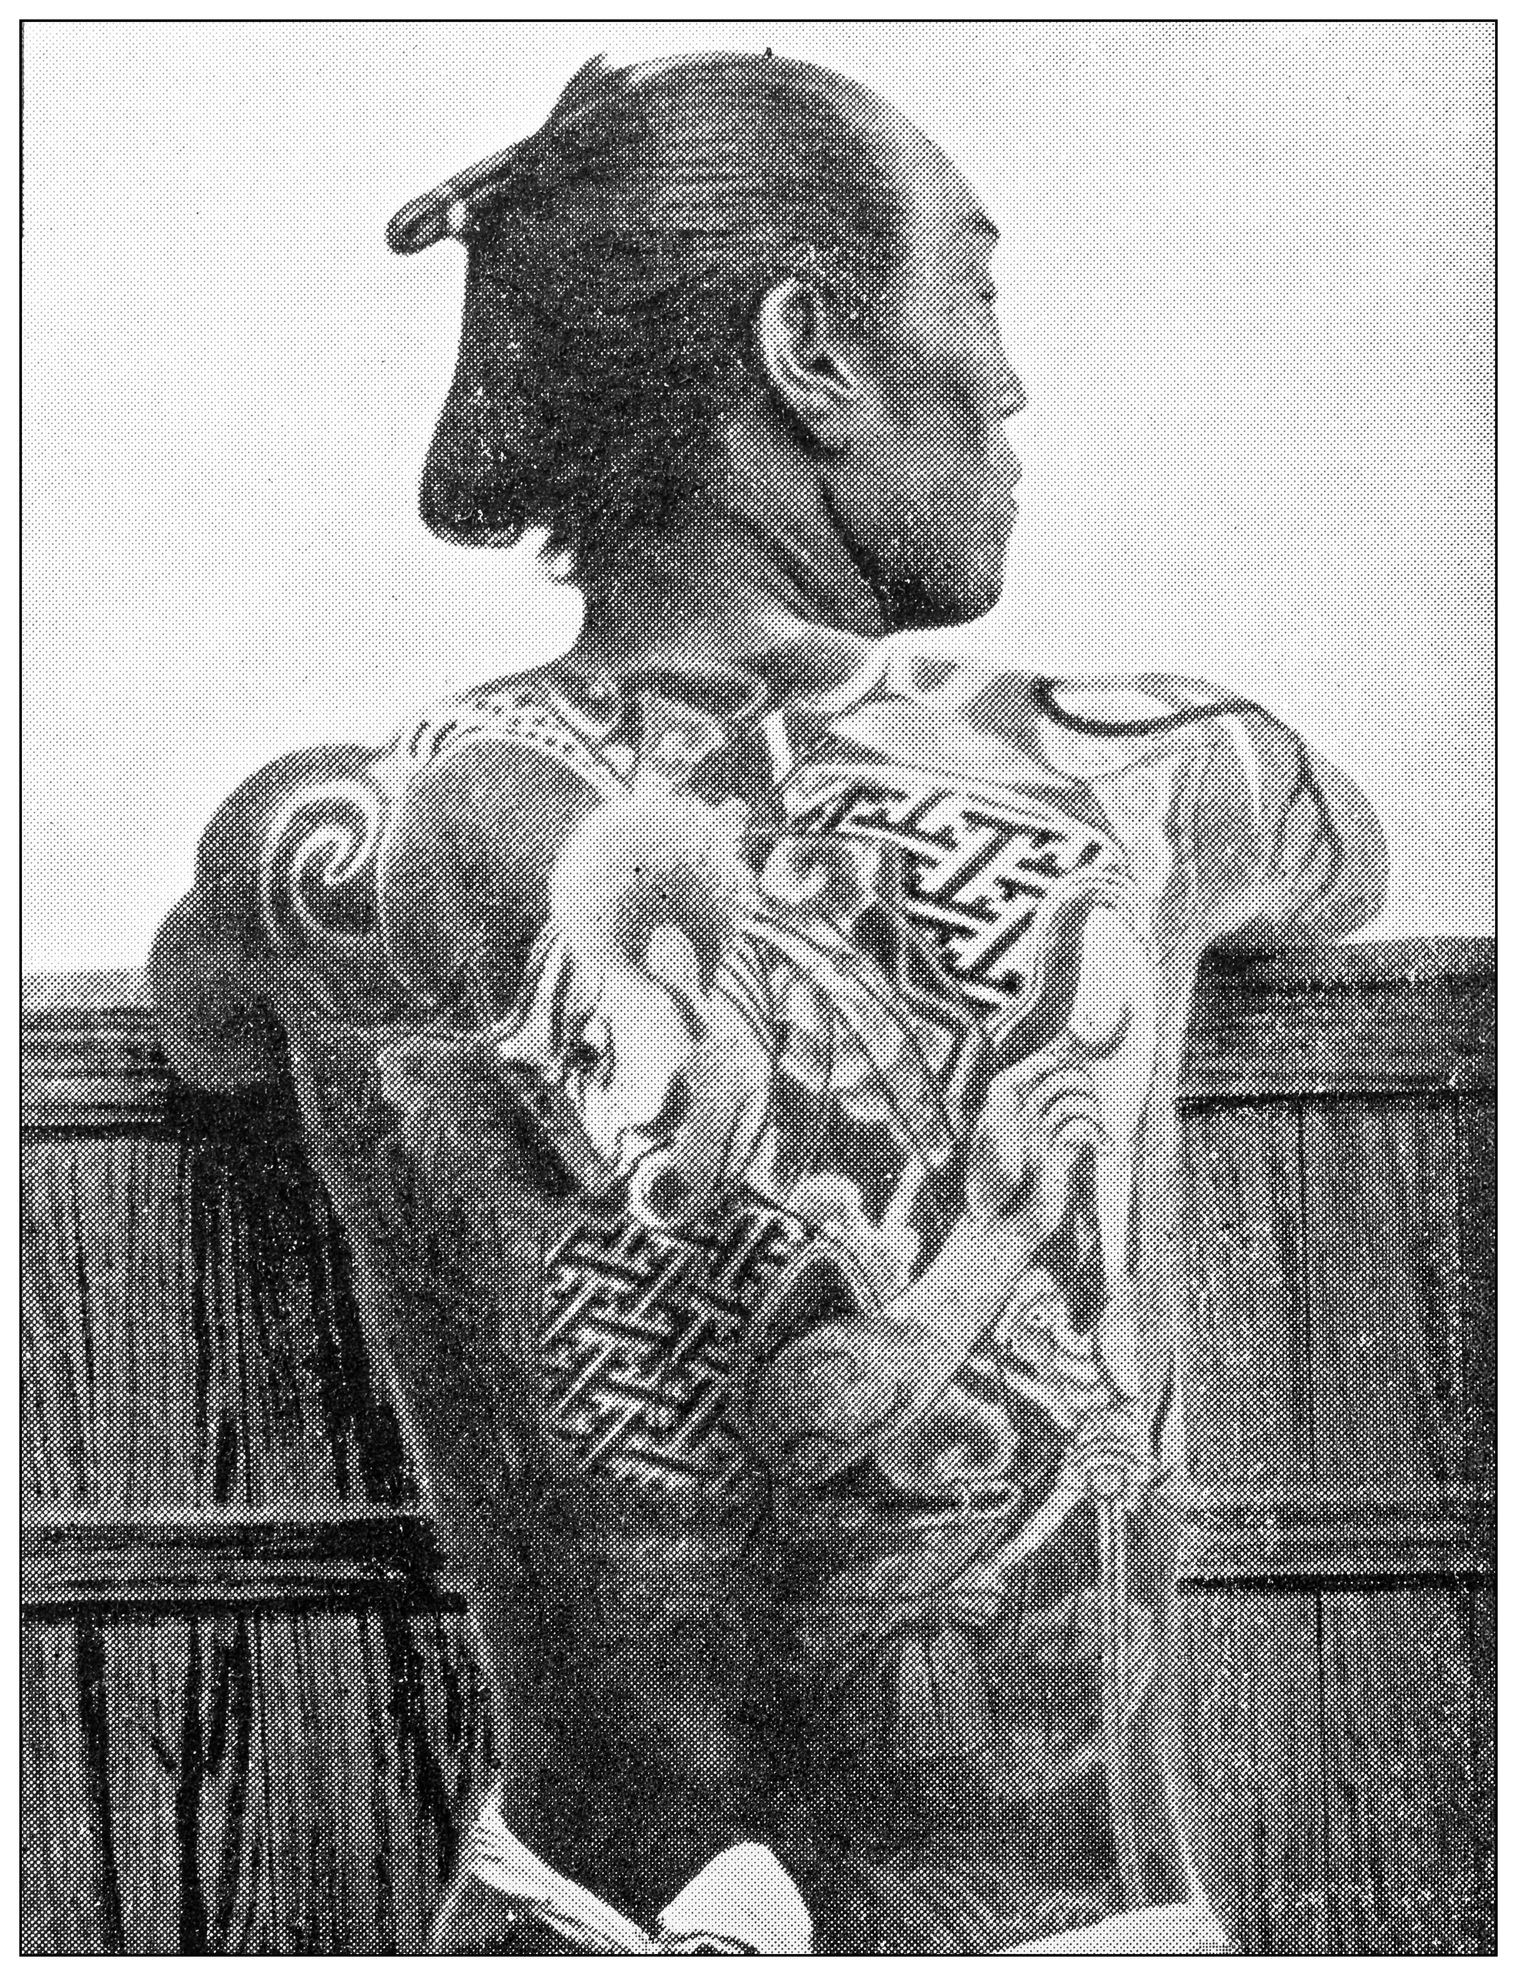 <p><strong>Татуировки&nbsp;в Япония</strong></p>

<p>Традиционно татуировките в Япония започват да се използват като средство за изразяване на обществения статус, както и като духовни символи за защита и преданост. С течение на времето обаче татуировките се превръщат във форма на наказание за затворниците и стигмата нараства. След Втората световна война татуировките са забранени от императора на Япония в опит да се подобри имиджът на страната на Запад. Макар че татуировките вече не са забранени, все още съществува силно отрицание срещу тях.</p>